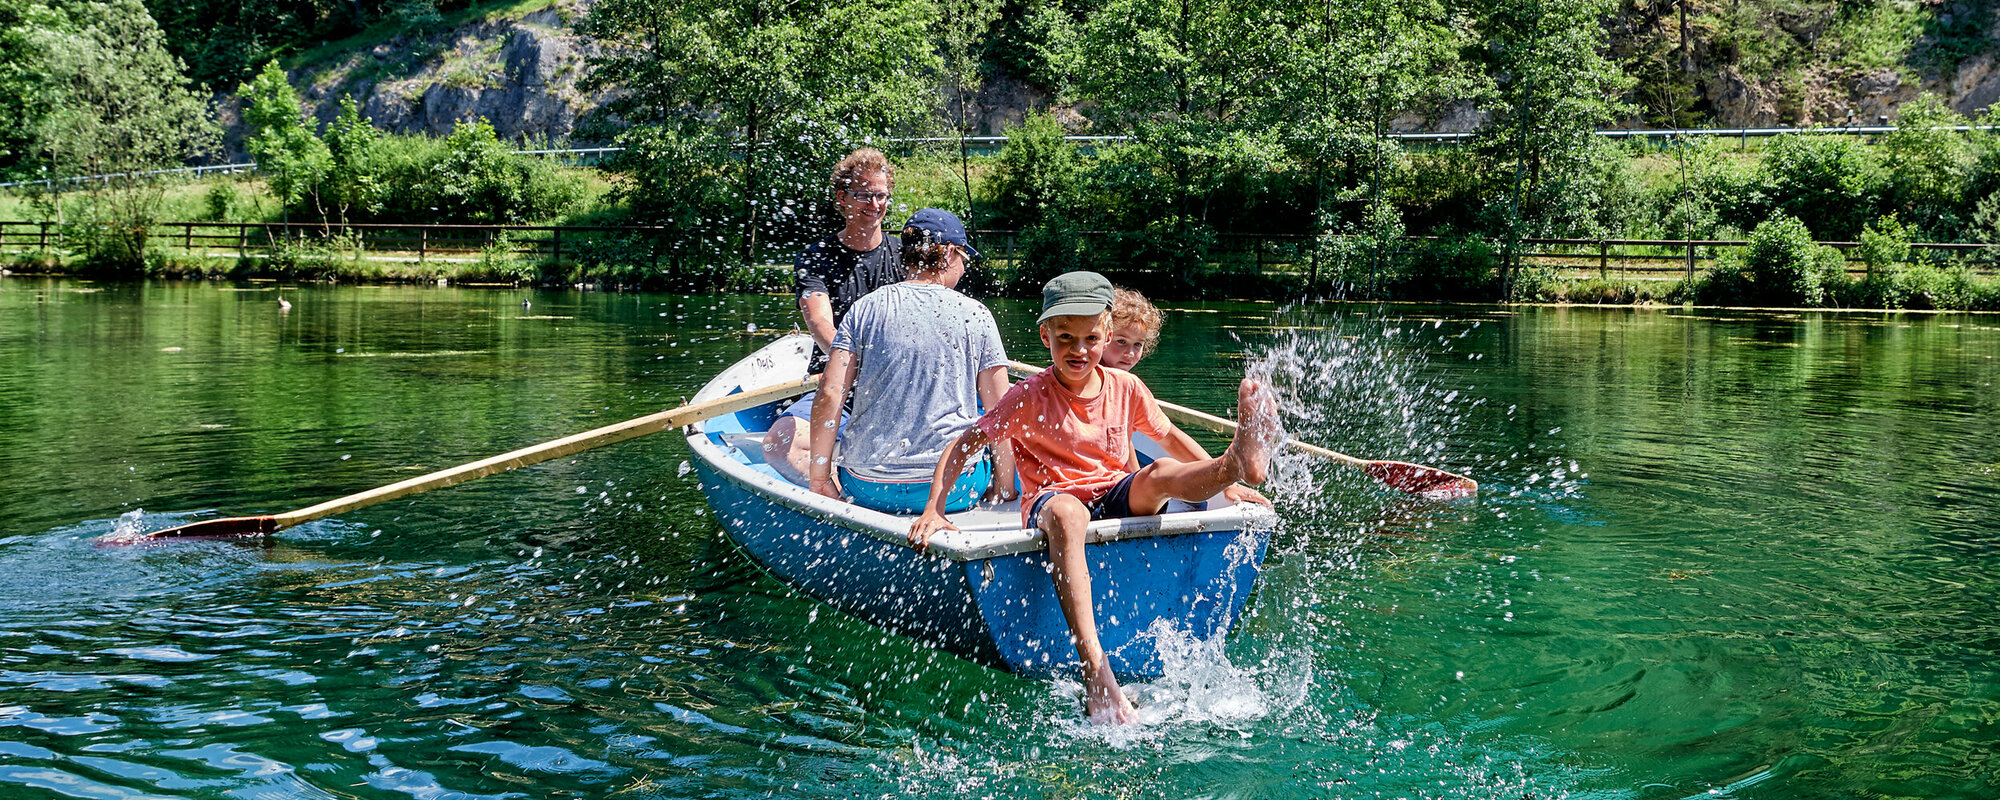 Eine Familie sitzt in einem blauen Boot auf einem See, der von Wald umgeben ist. Der Vater rudert, der Sohn sitzt hinten an der Kante und spritzt mit dem Fuß mit Wasser.